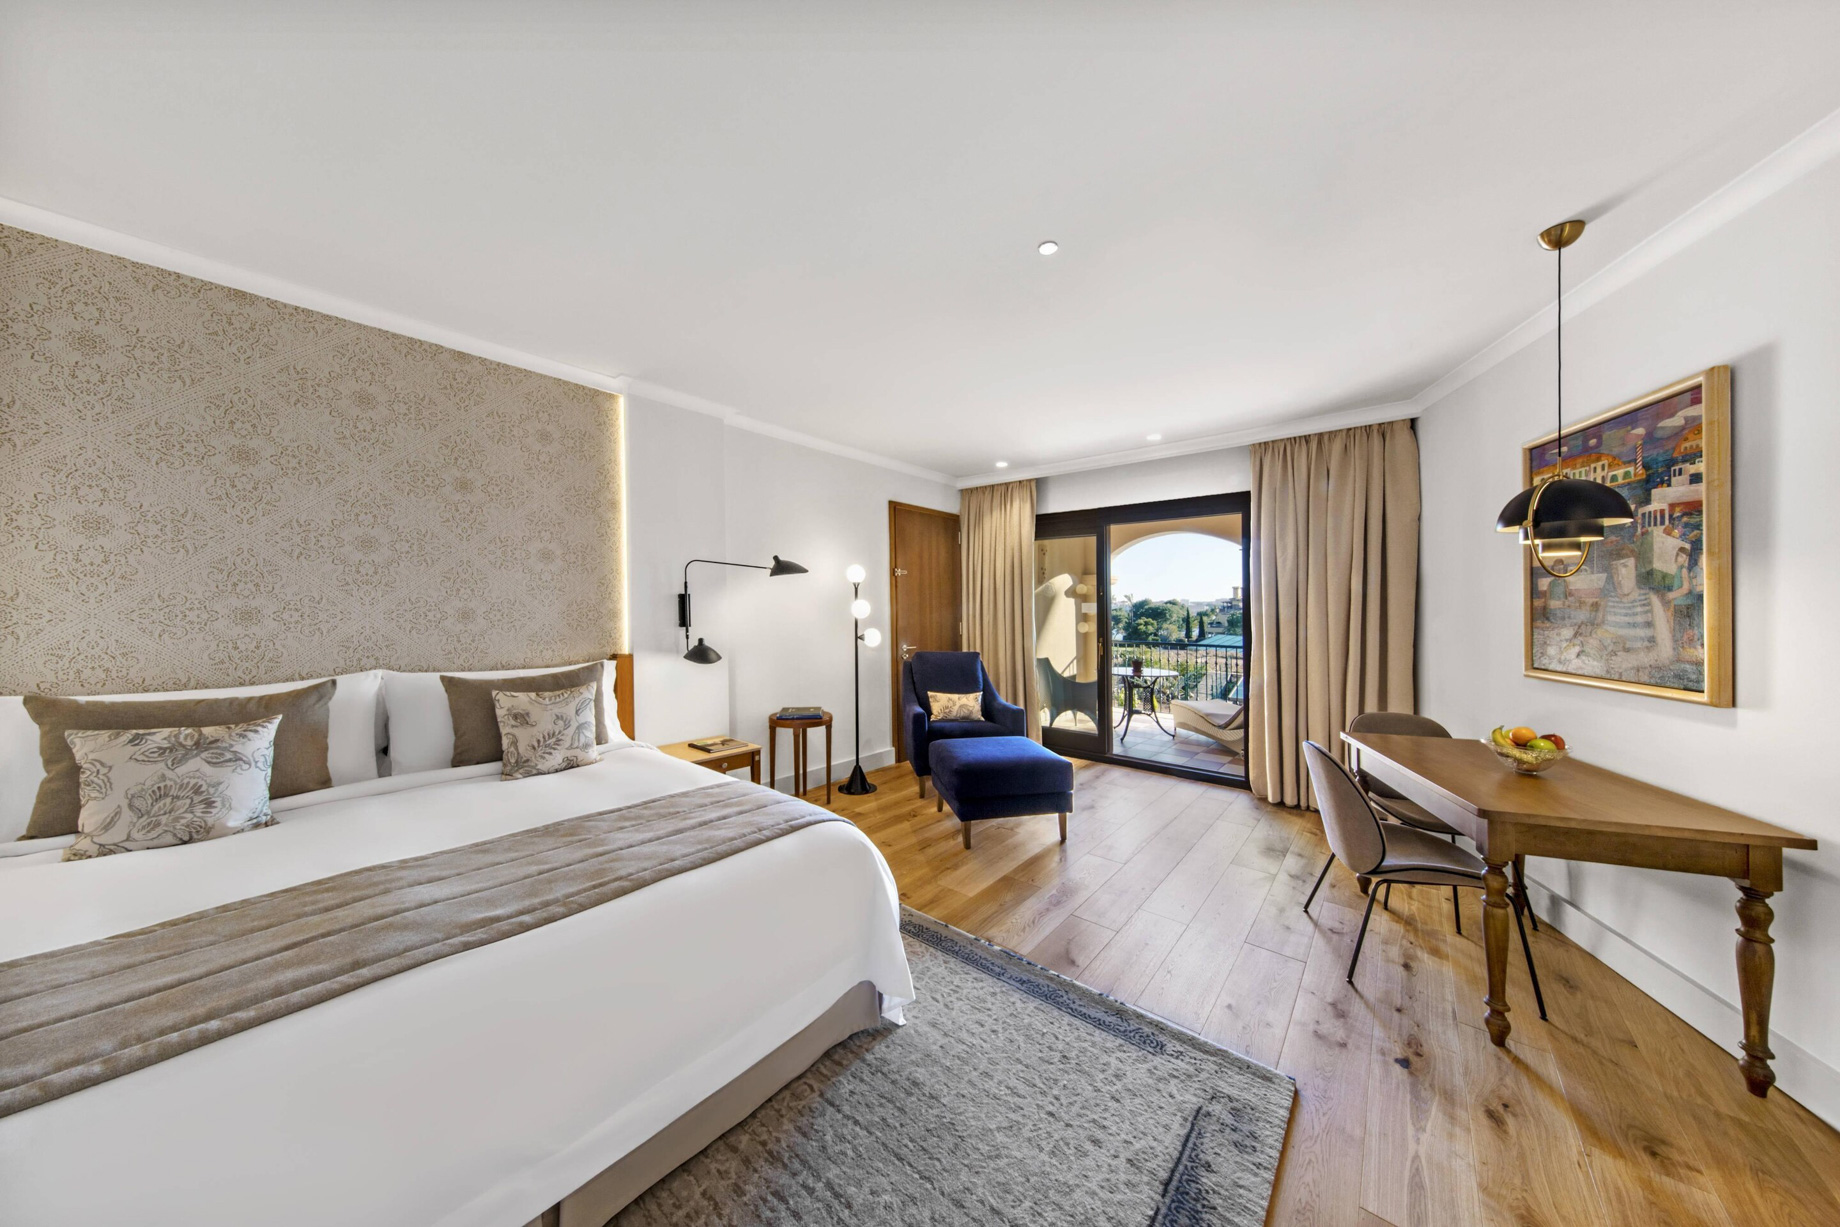 The St. Regis Mardavall Mallorca Resort – Palma de Mallorca, Spain – Grand Deluxe Bedroom Sea View